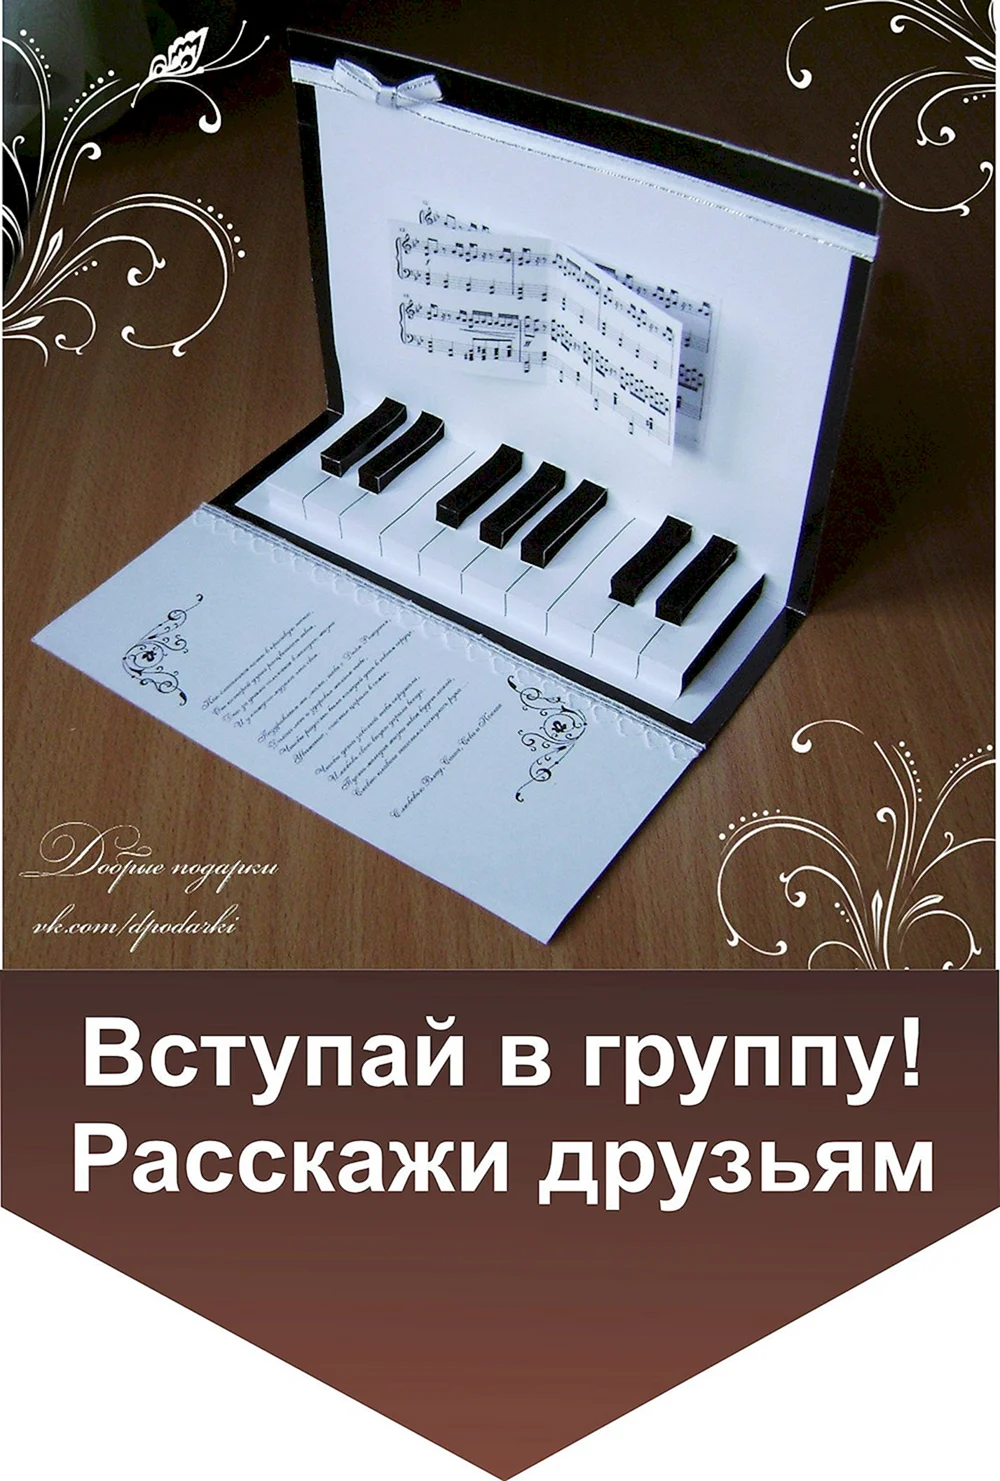 Открытка для учителя фортепьяно